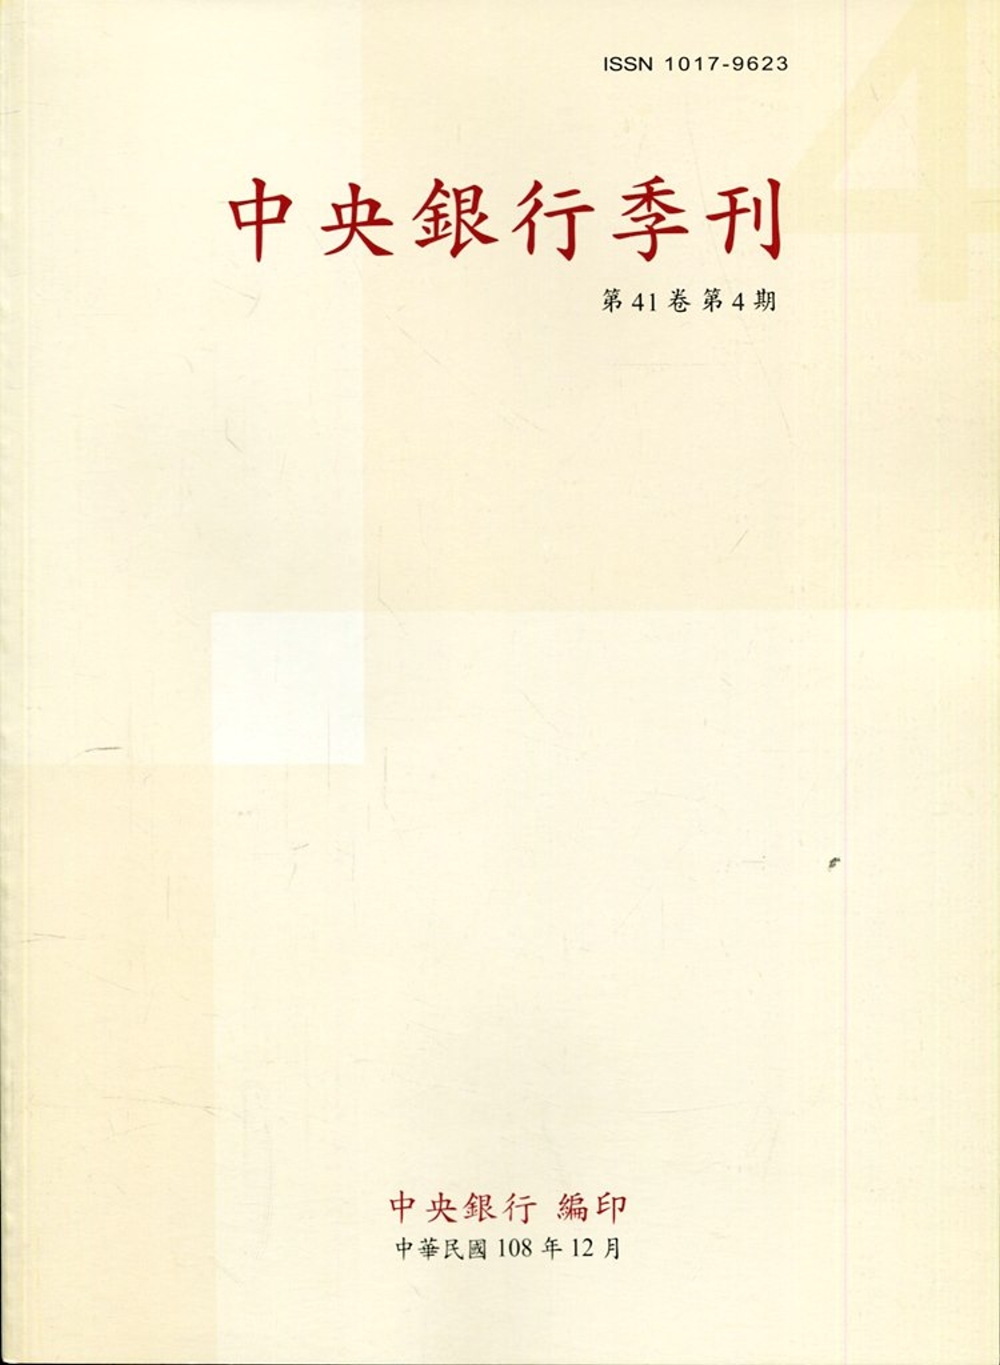 中央銀行季刊41卷4期(108.12)